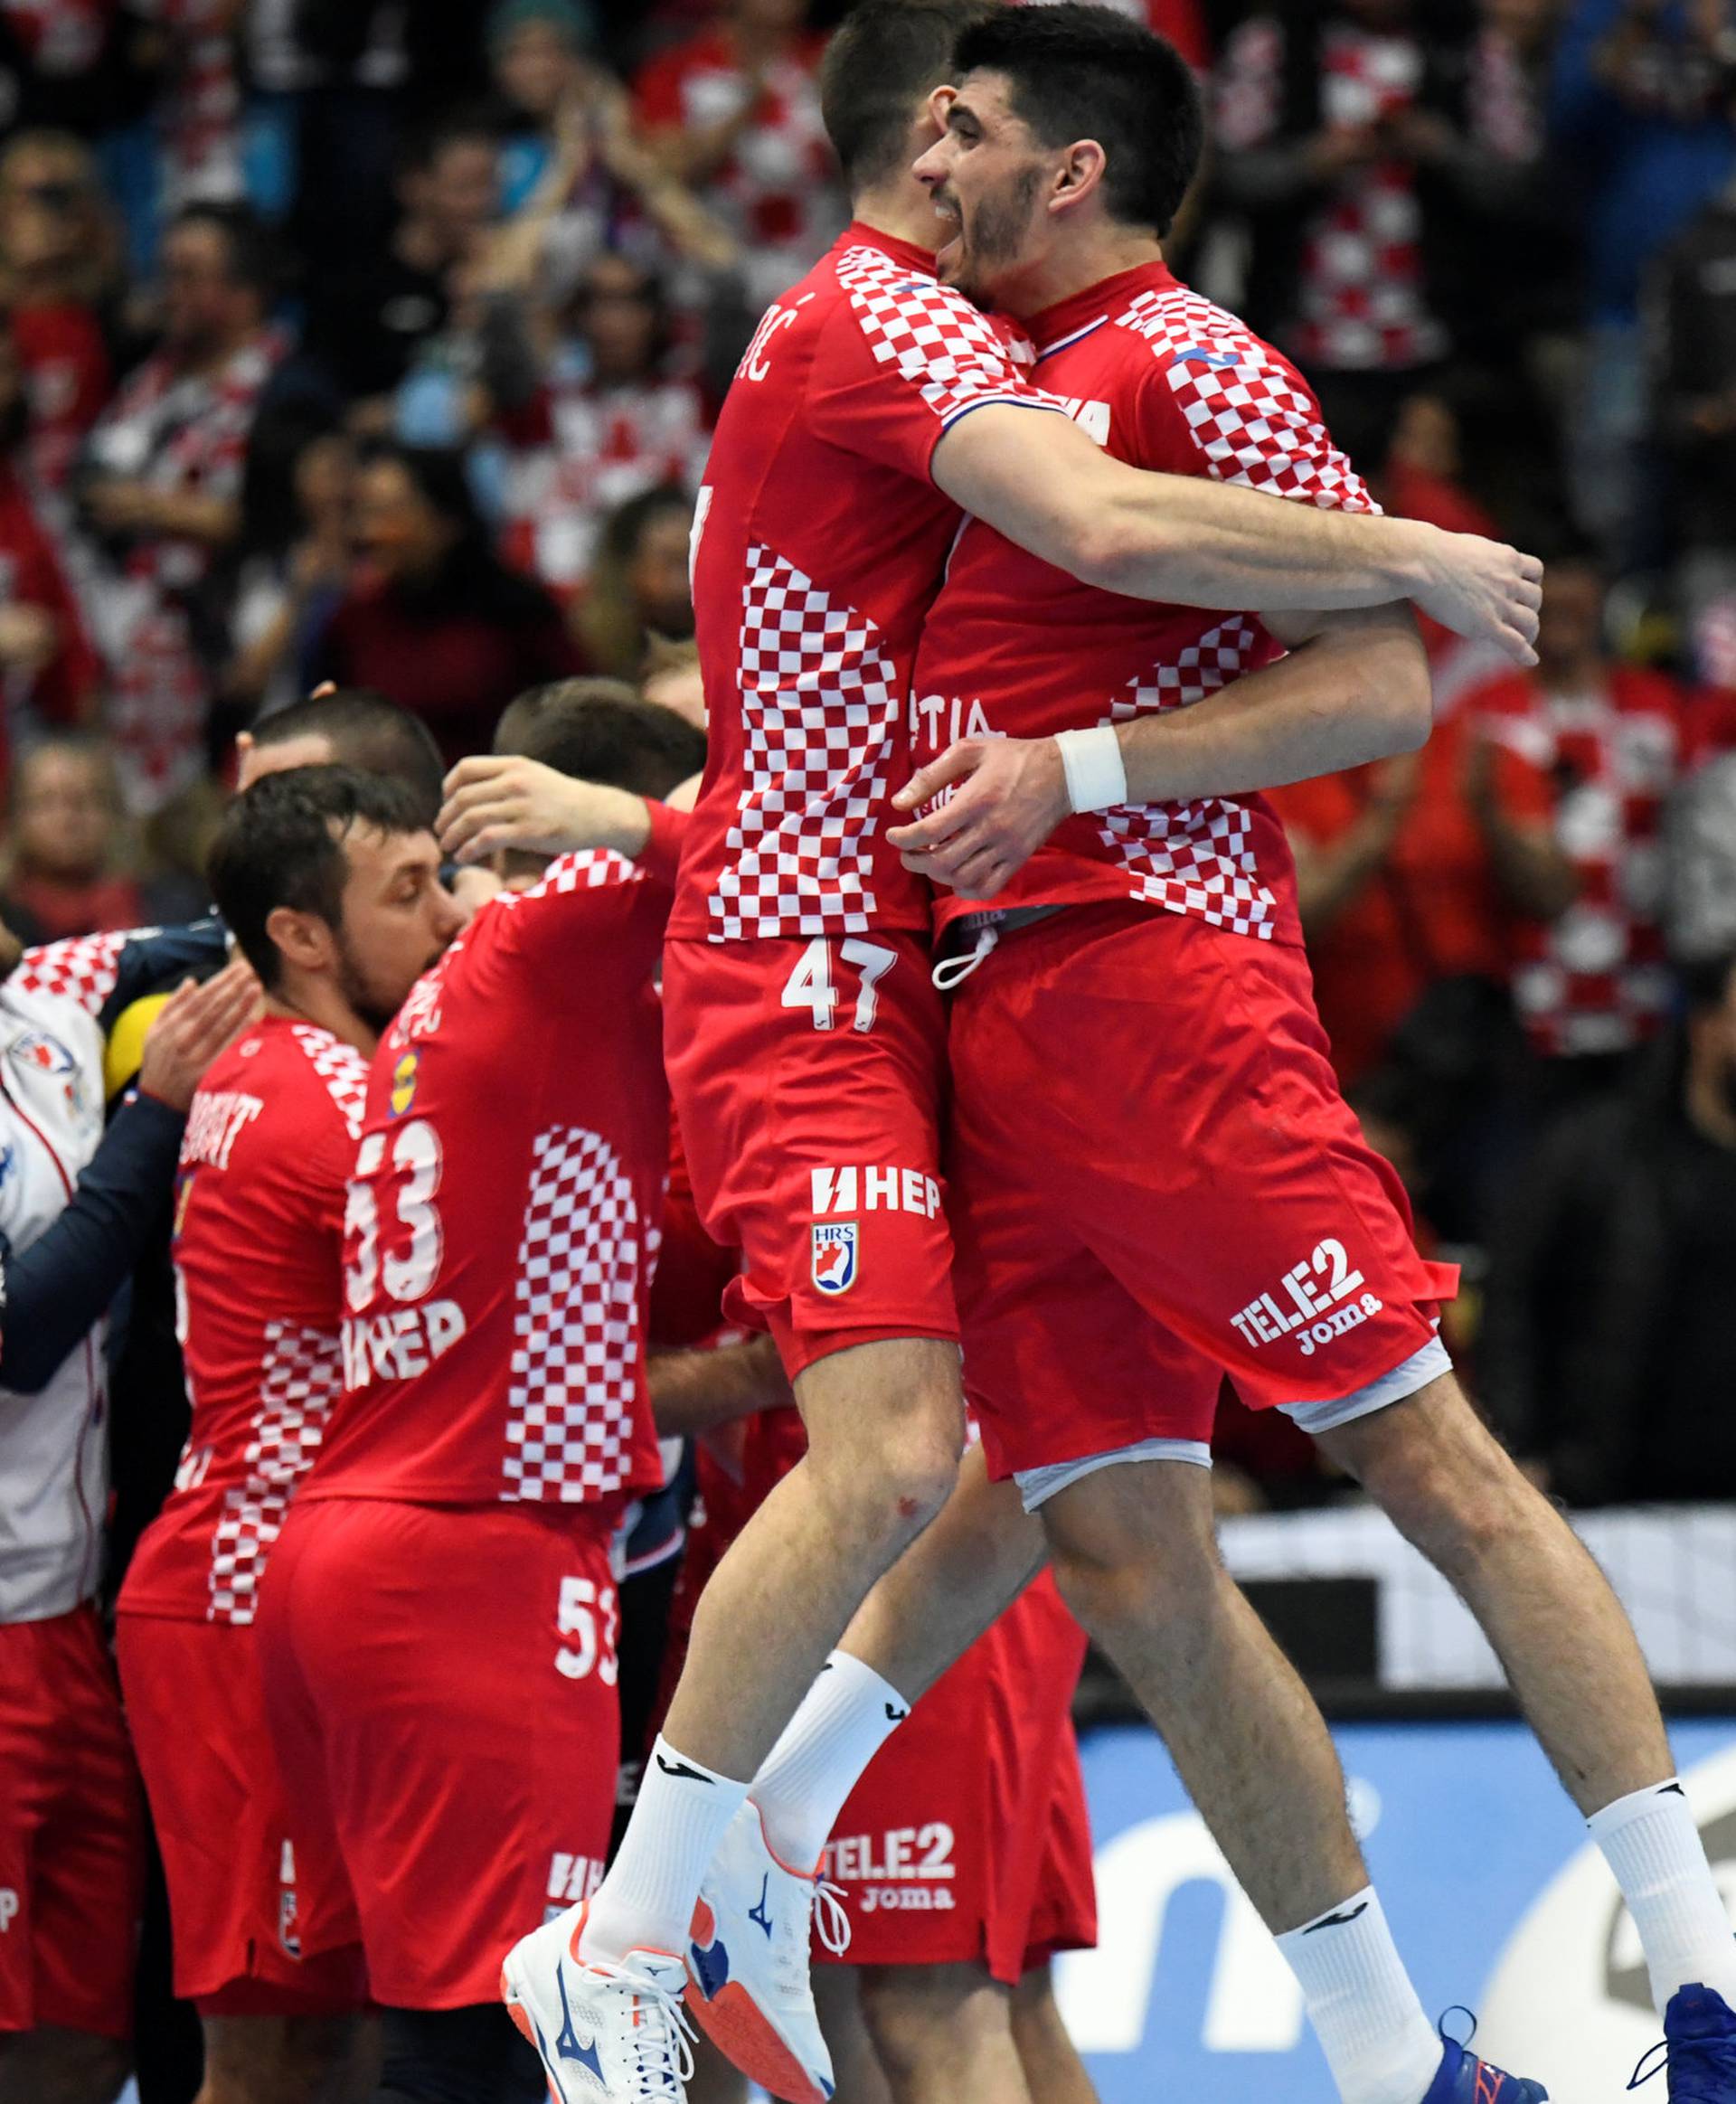 IHF Handball World Championship - Germany & Denmark 2019 - Group B - Croatia v Macedonia